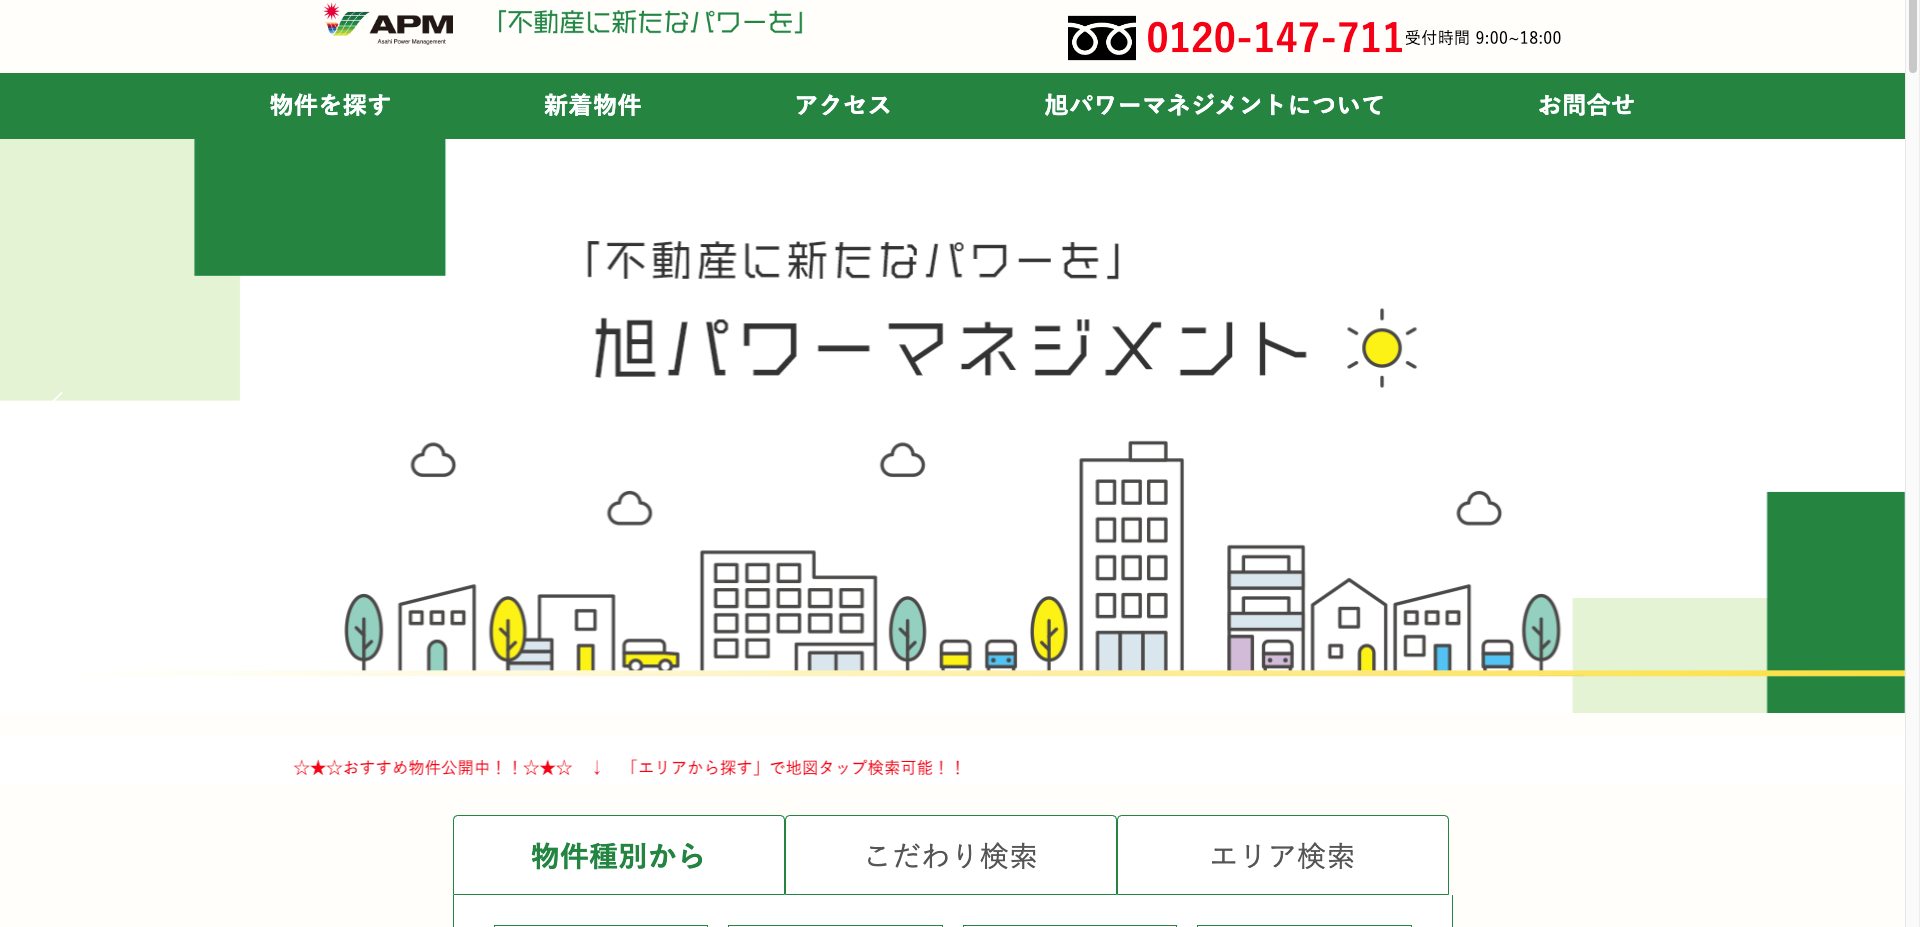 ミヤケコーポレーションは姫路市の不動産売却でトップクラスの実績！